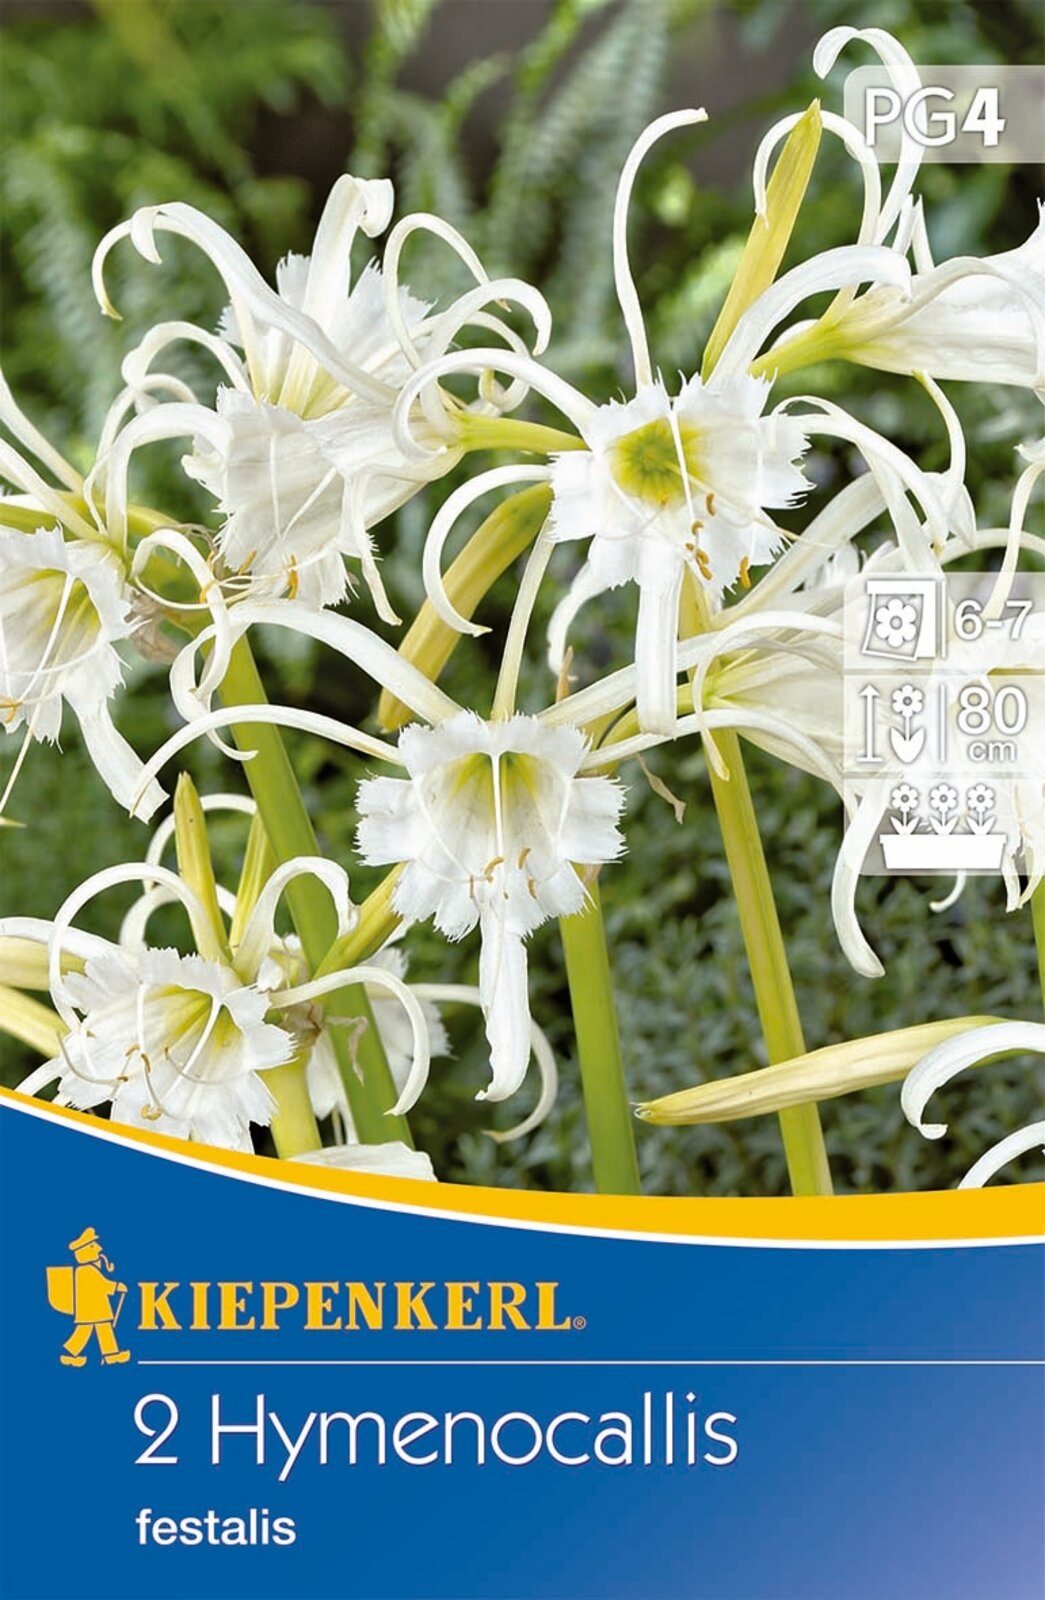 Flower bulb Spider lily (Hymenocallis) Ismene (white) Kiepenkerl 2 pcs